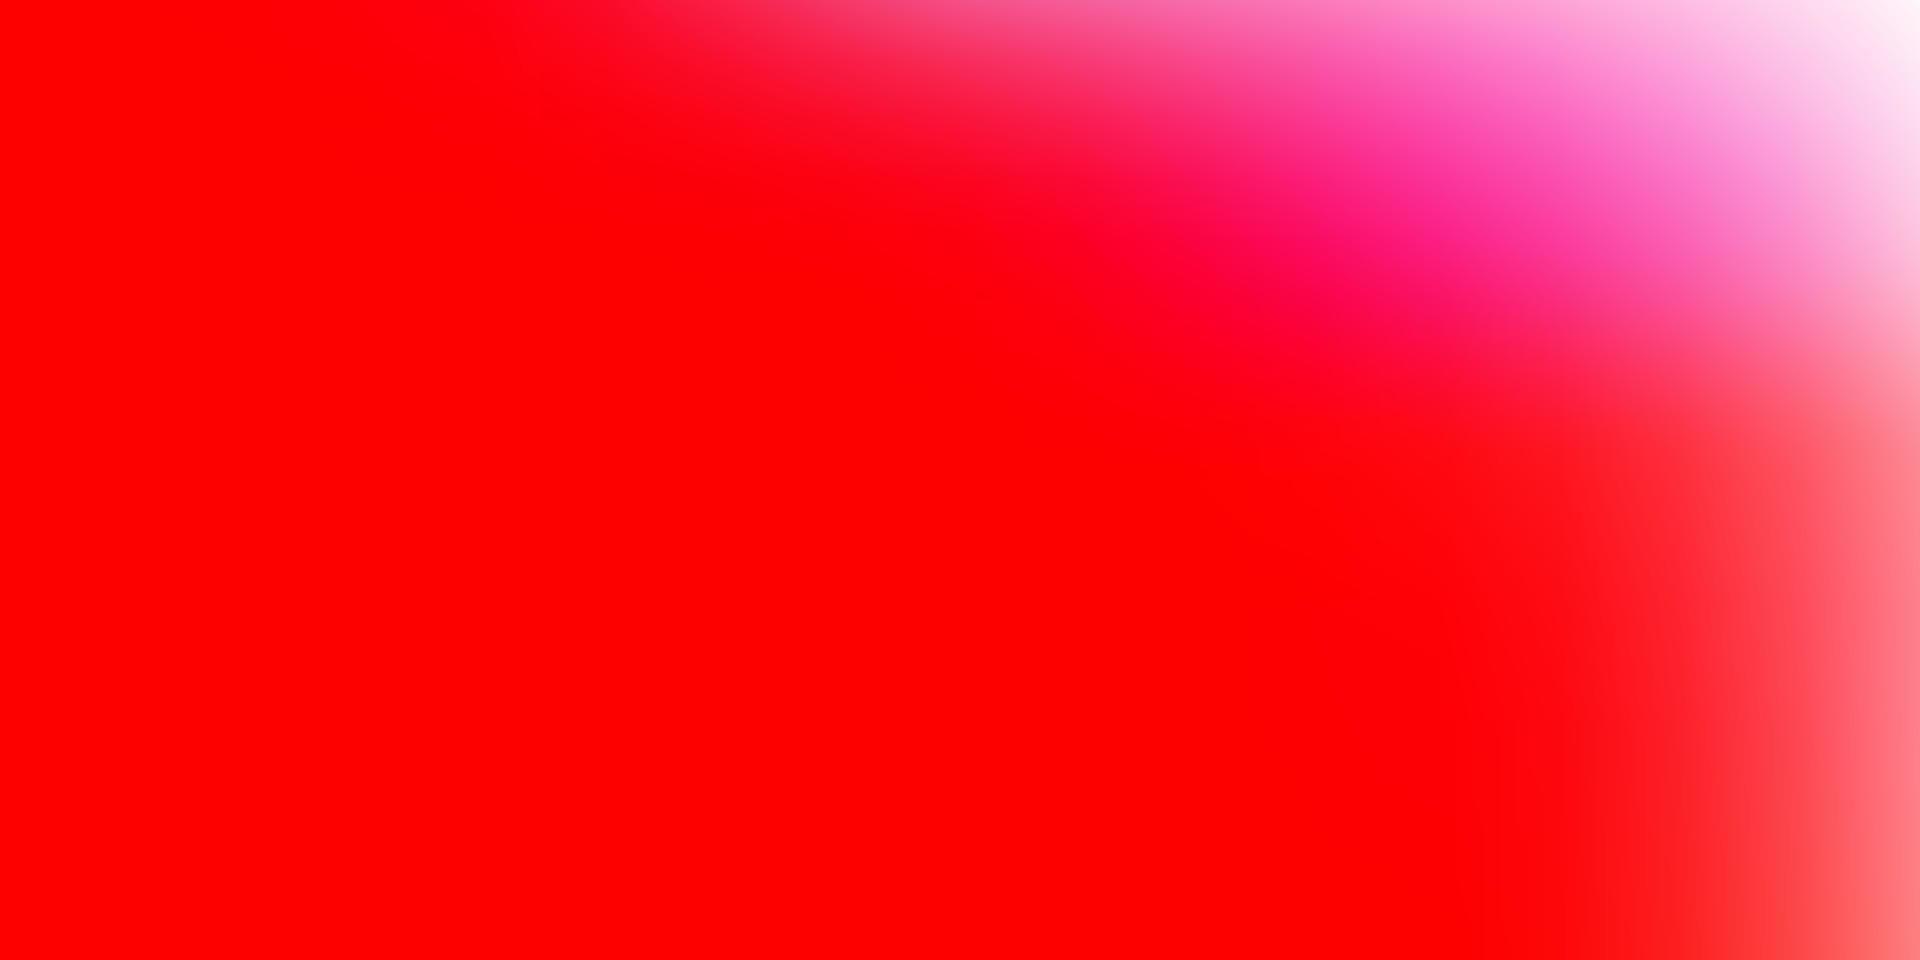 sfondo sfocatura astratta vettoriale rosso chiaro.